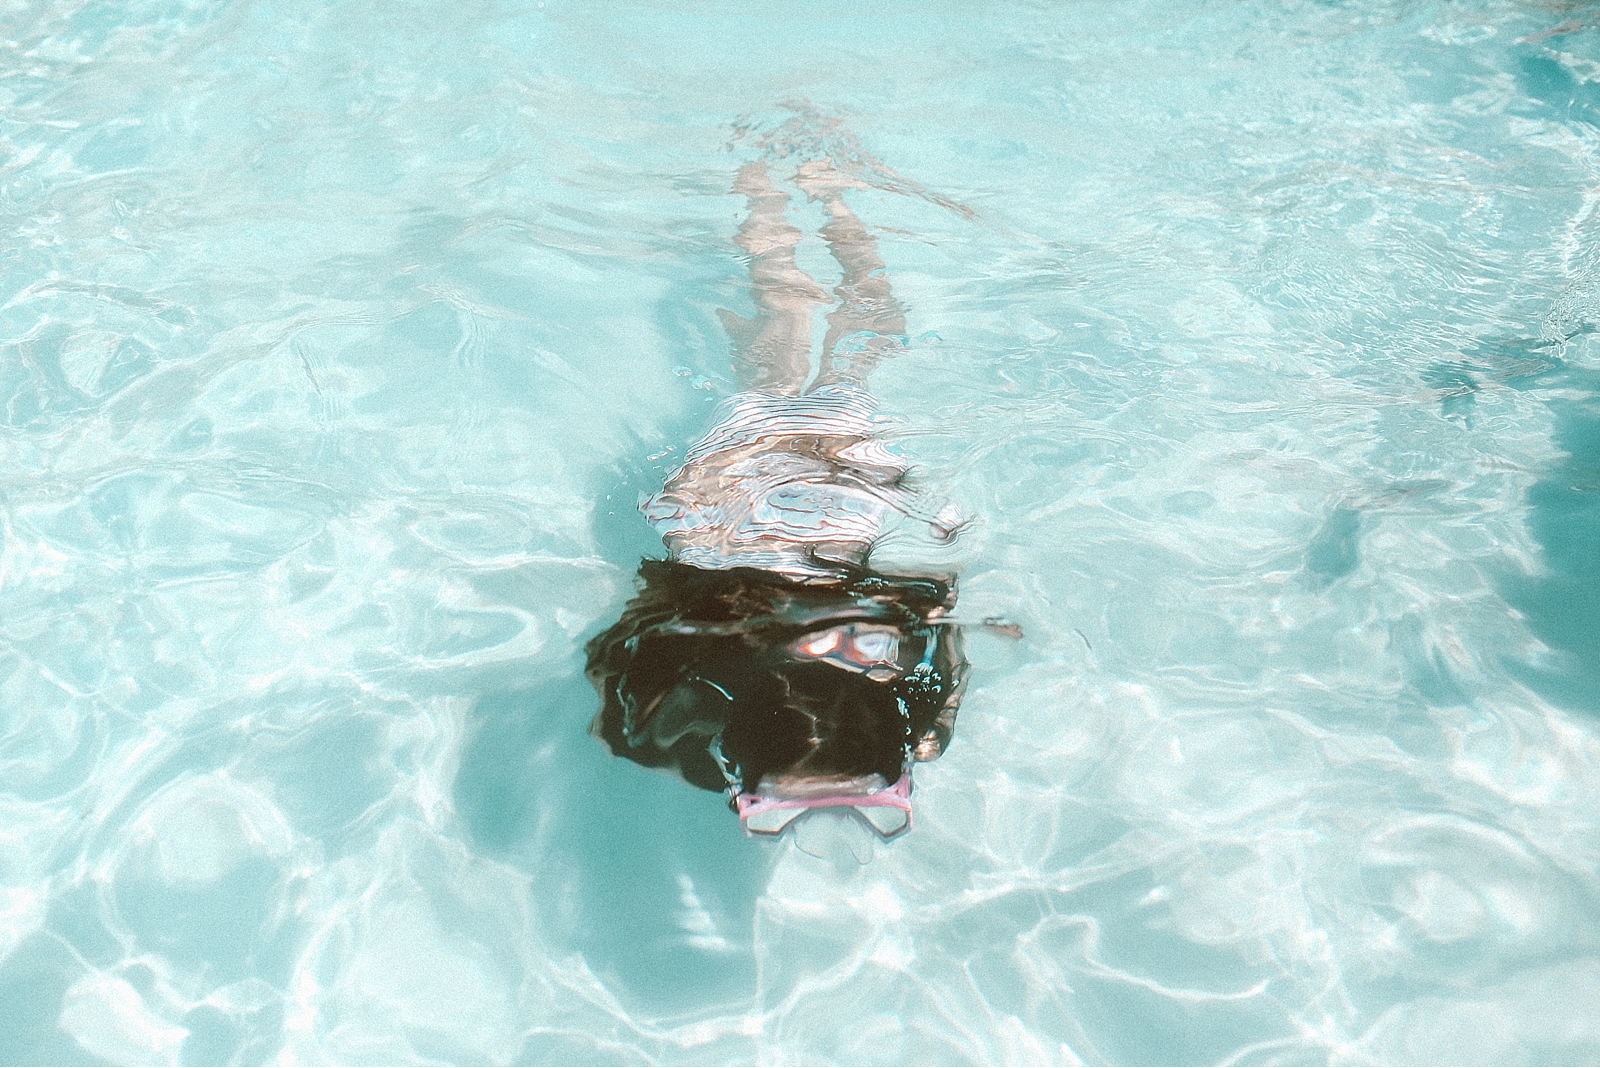 girl swimming in pool